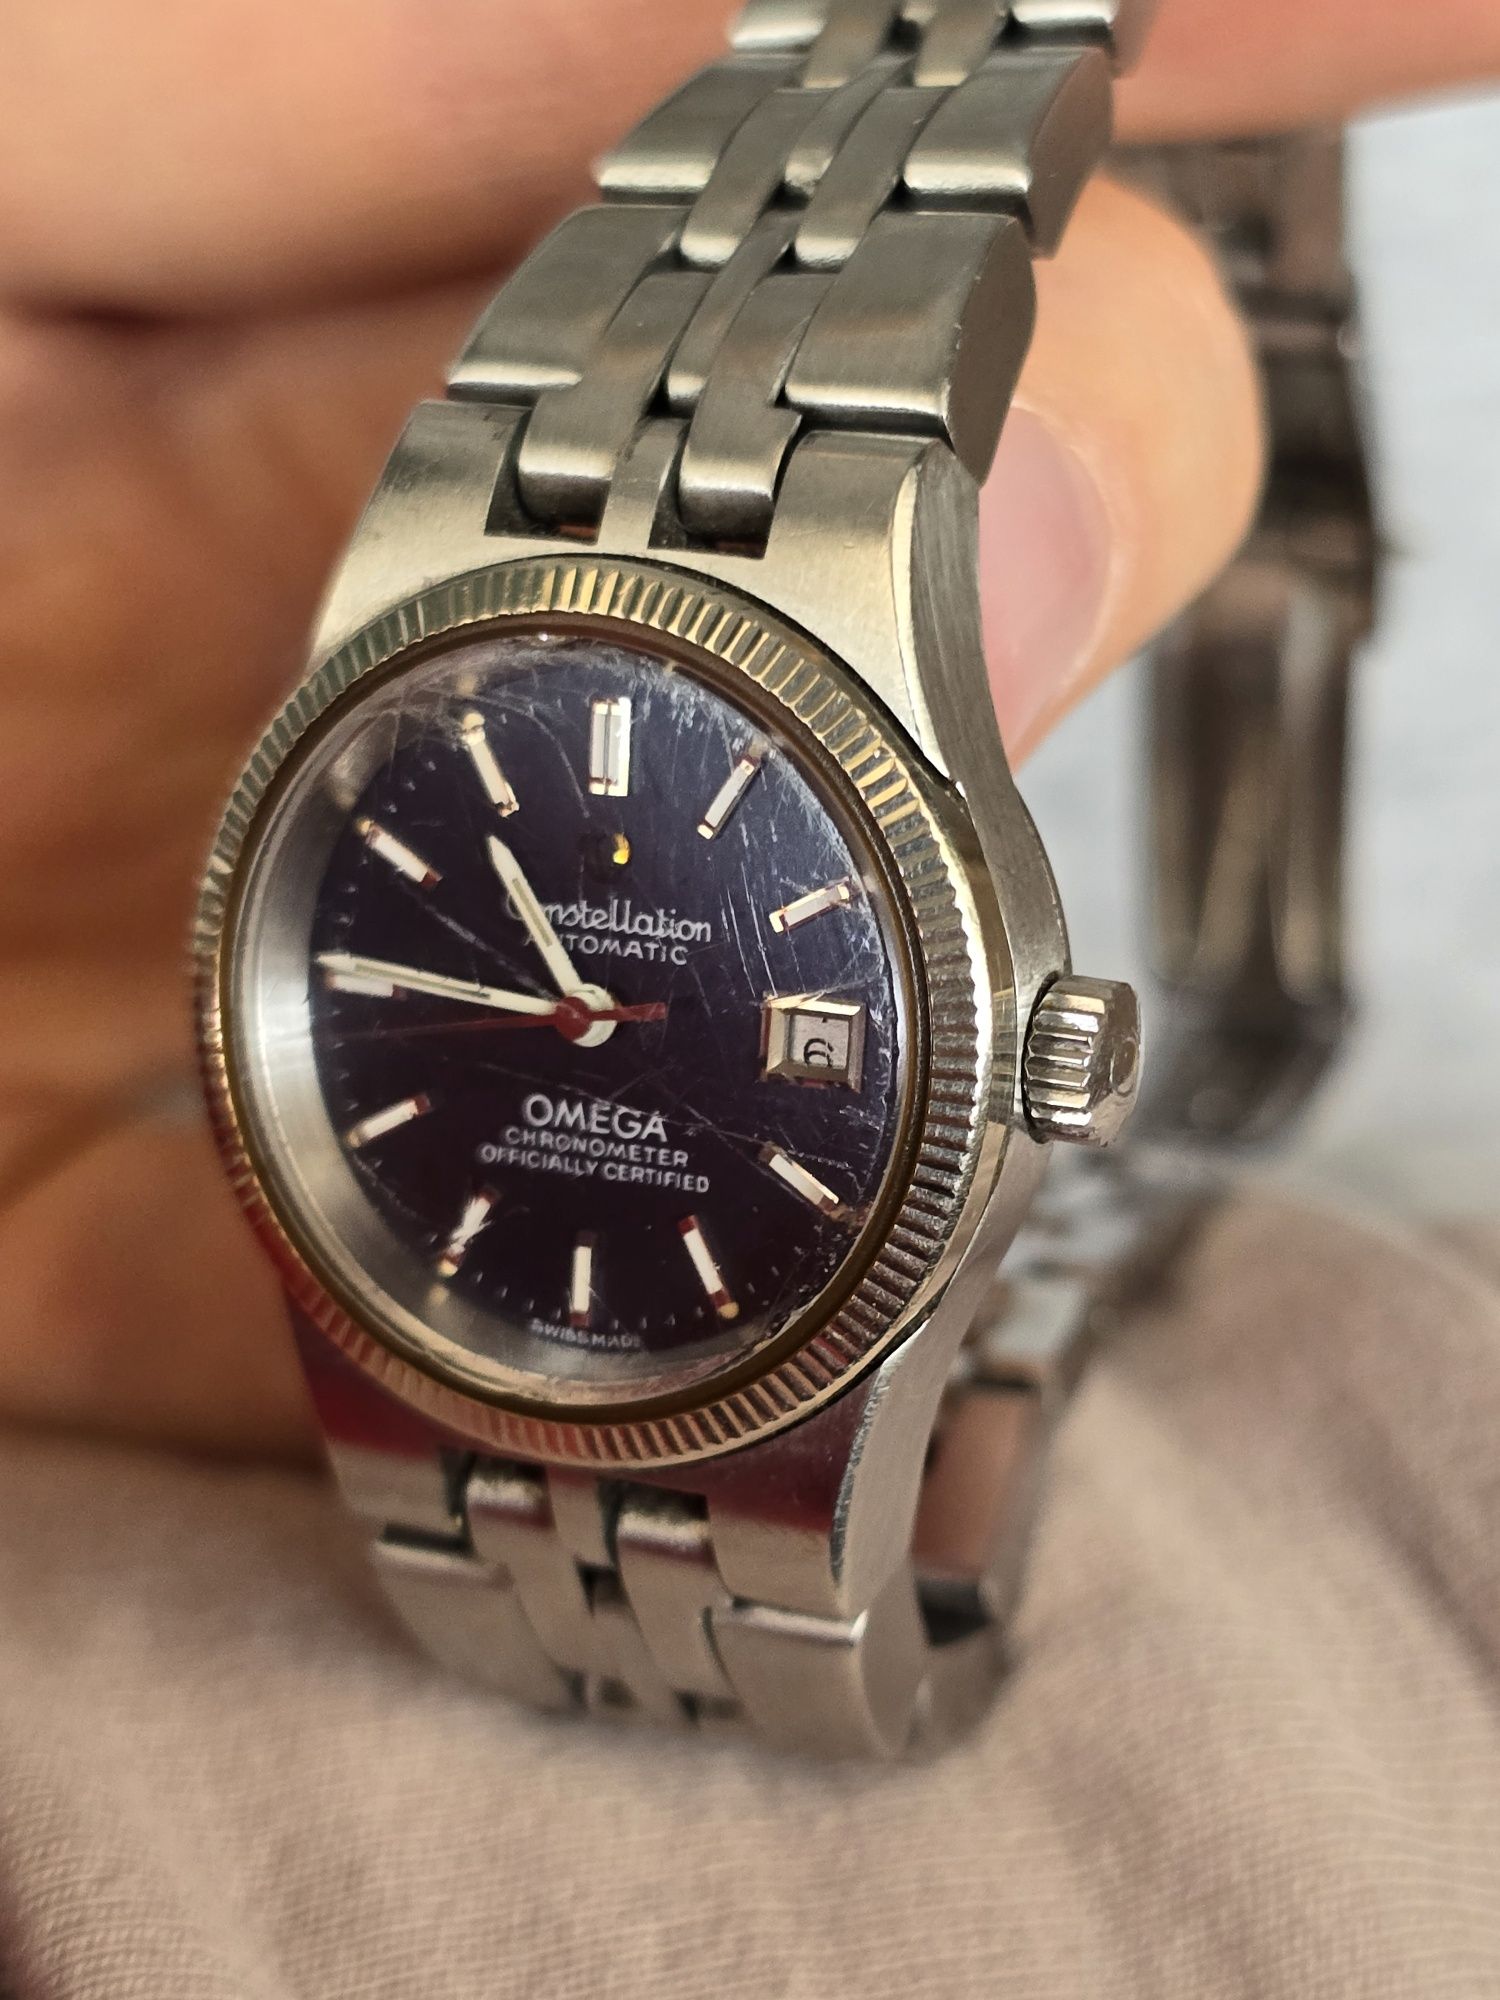 Omega constellation automatic zegarek damski z 1969 roku sprawny